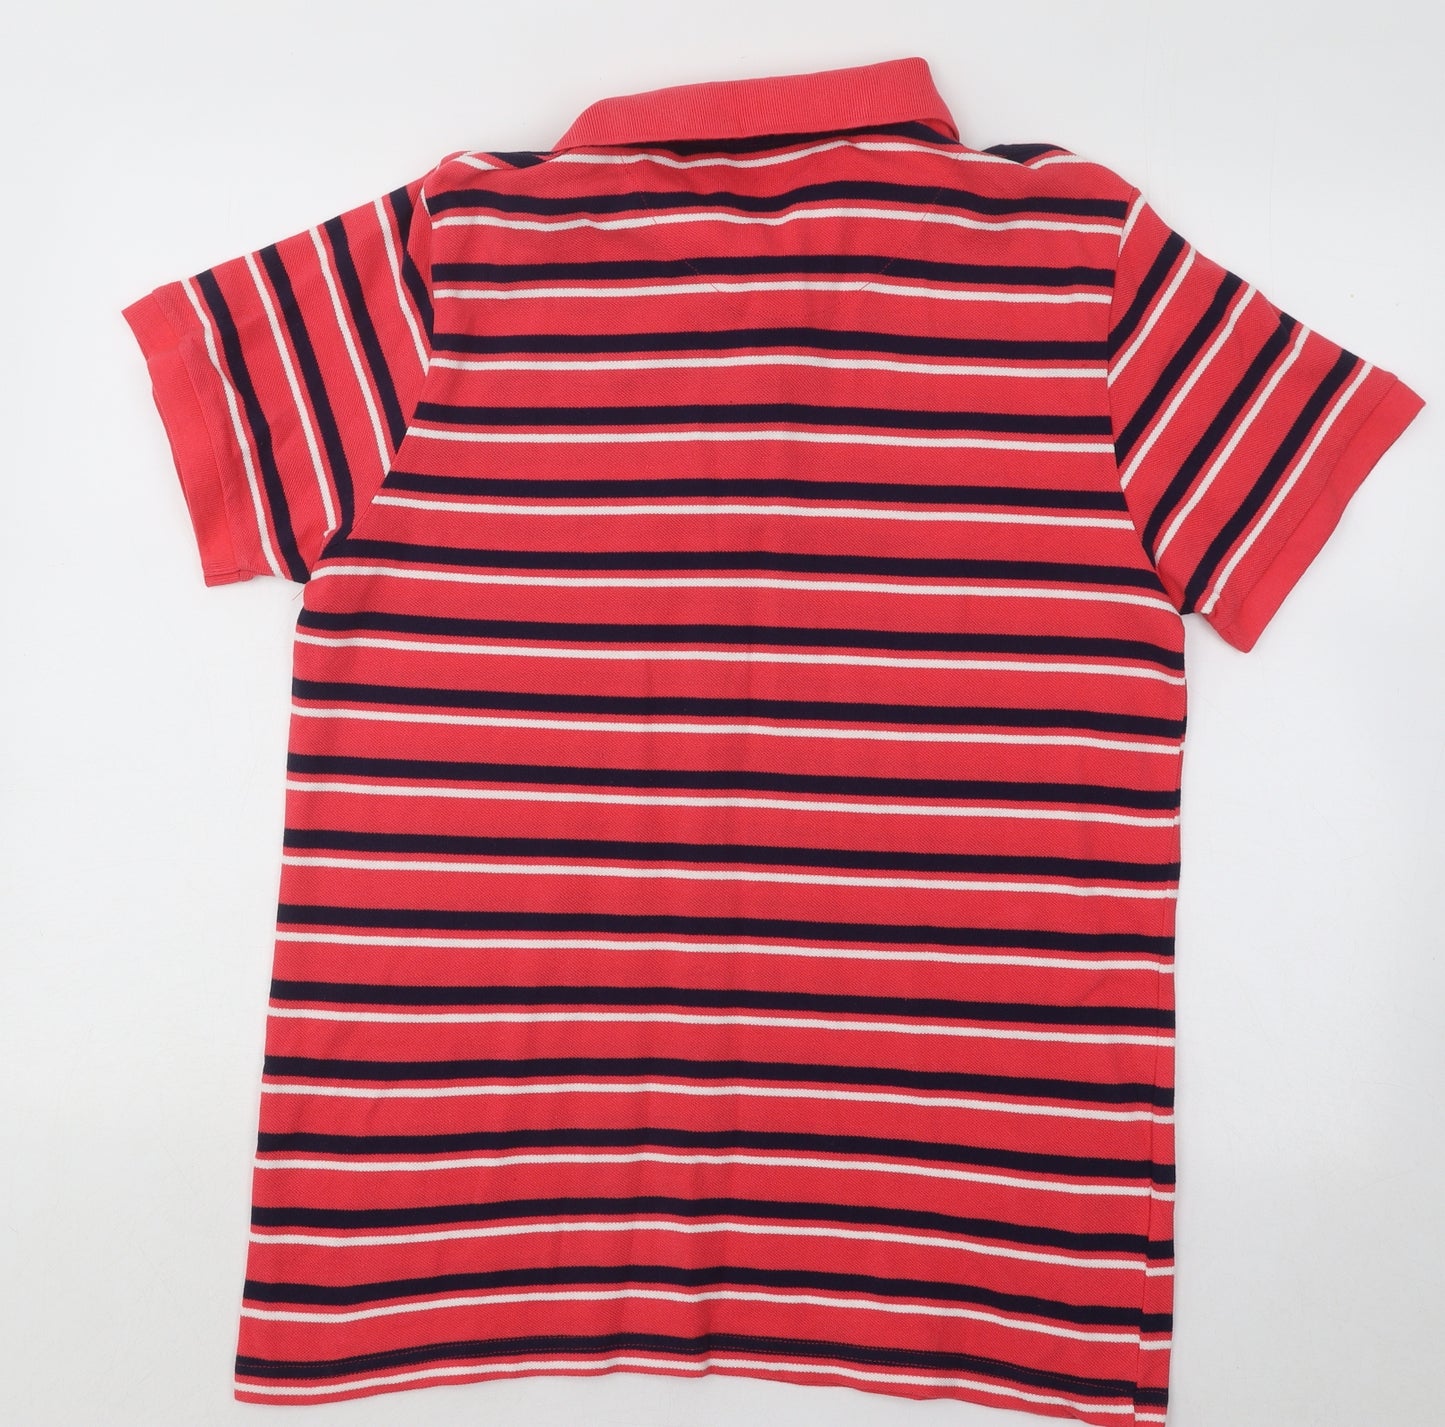 Easy Mens Multicoloured Striped Cotton Polo Size L Collared Button